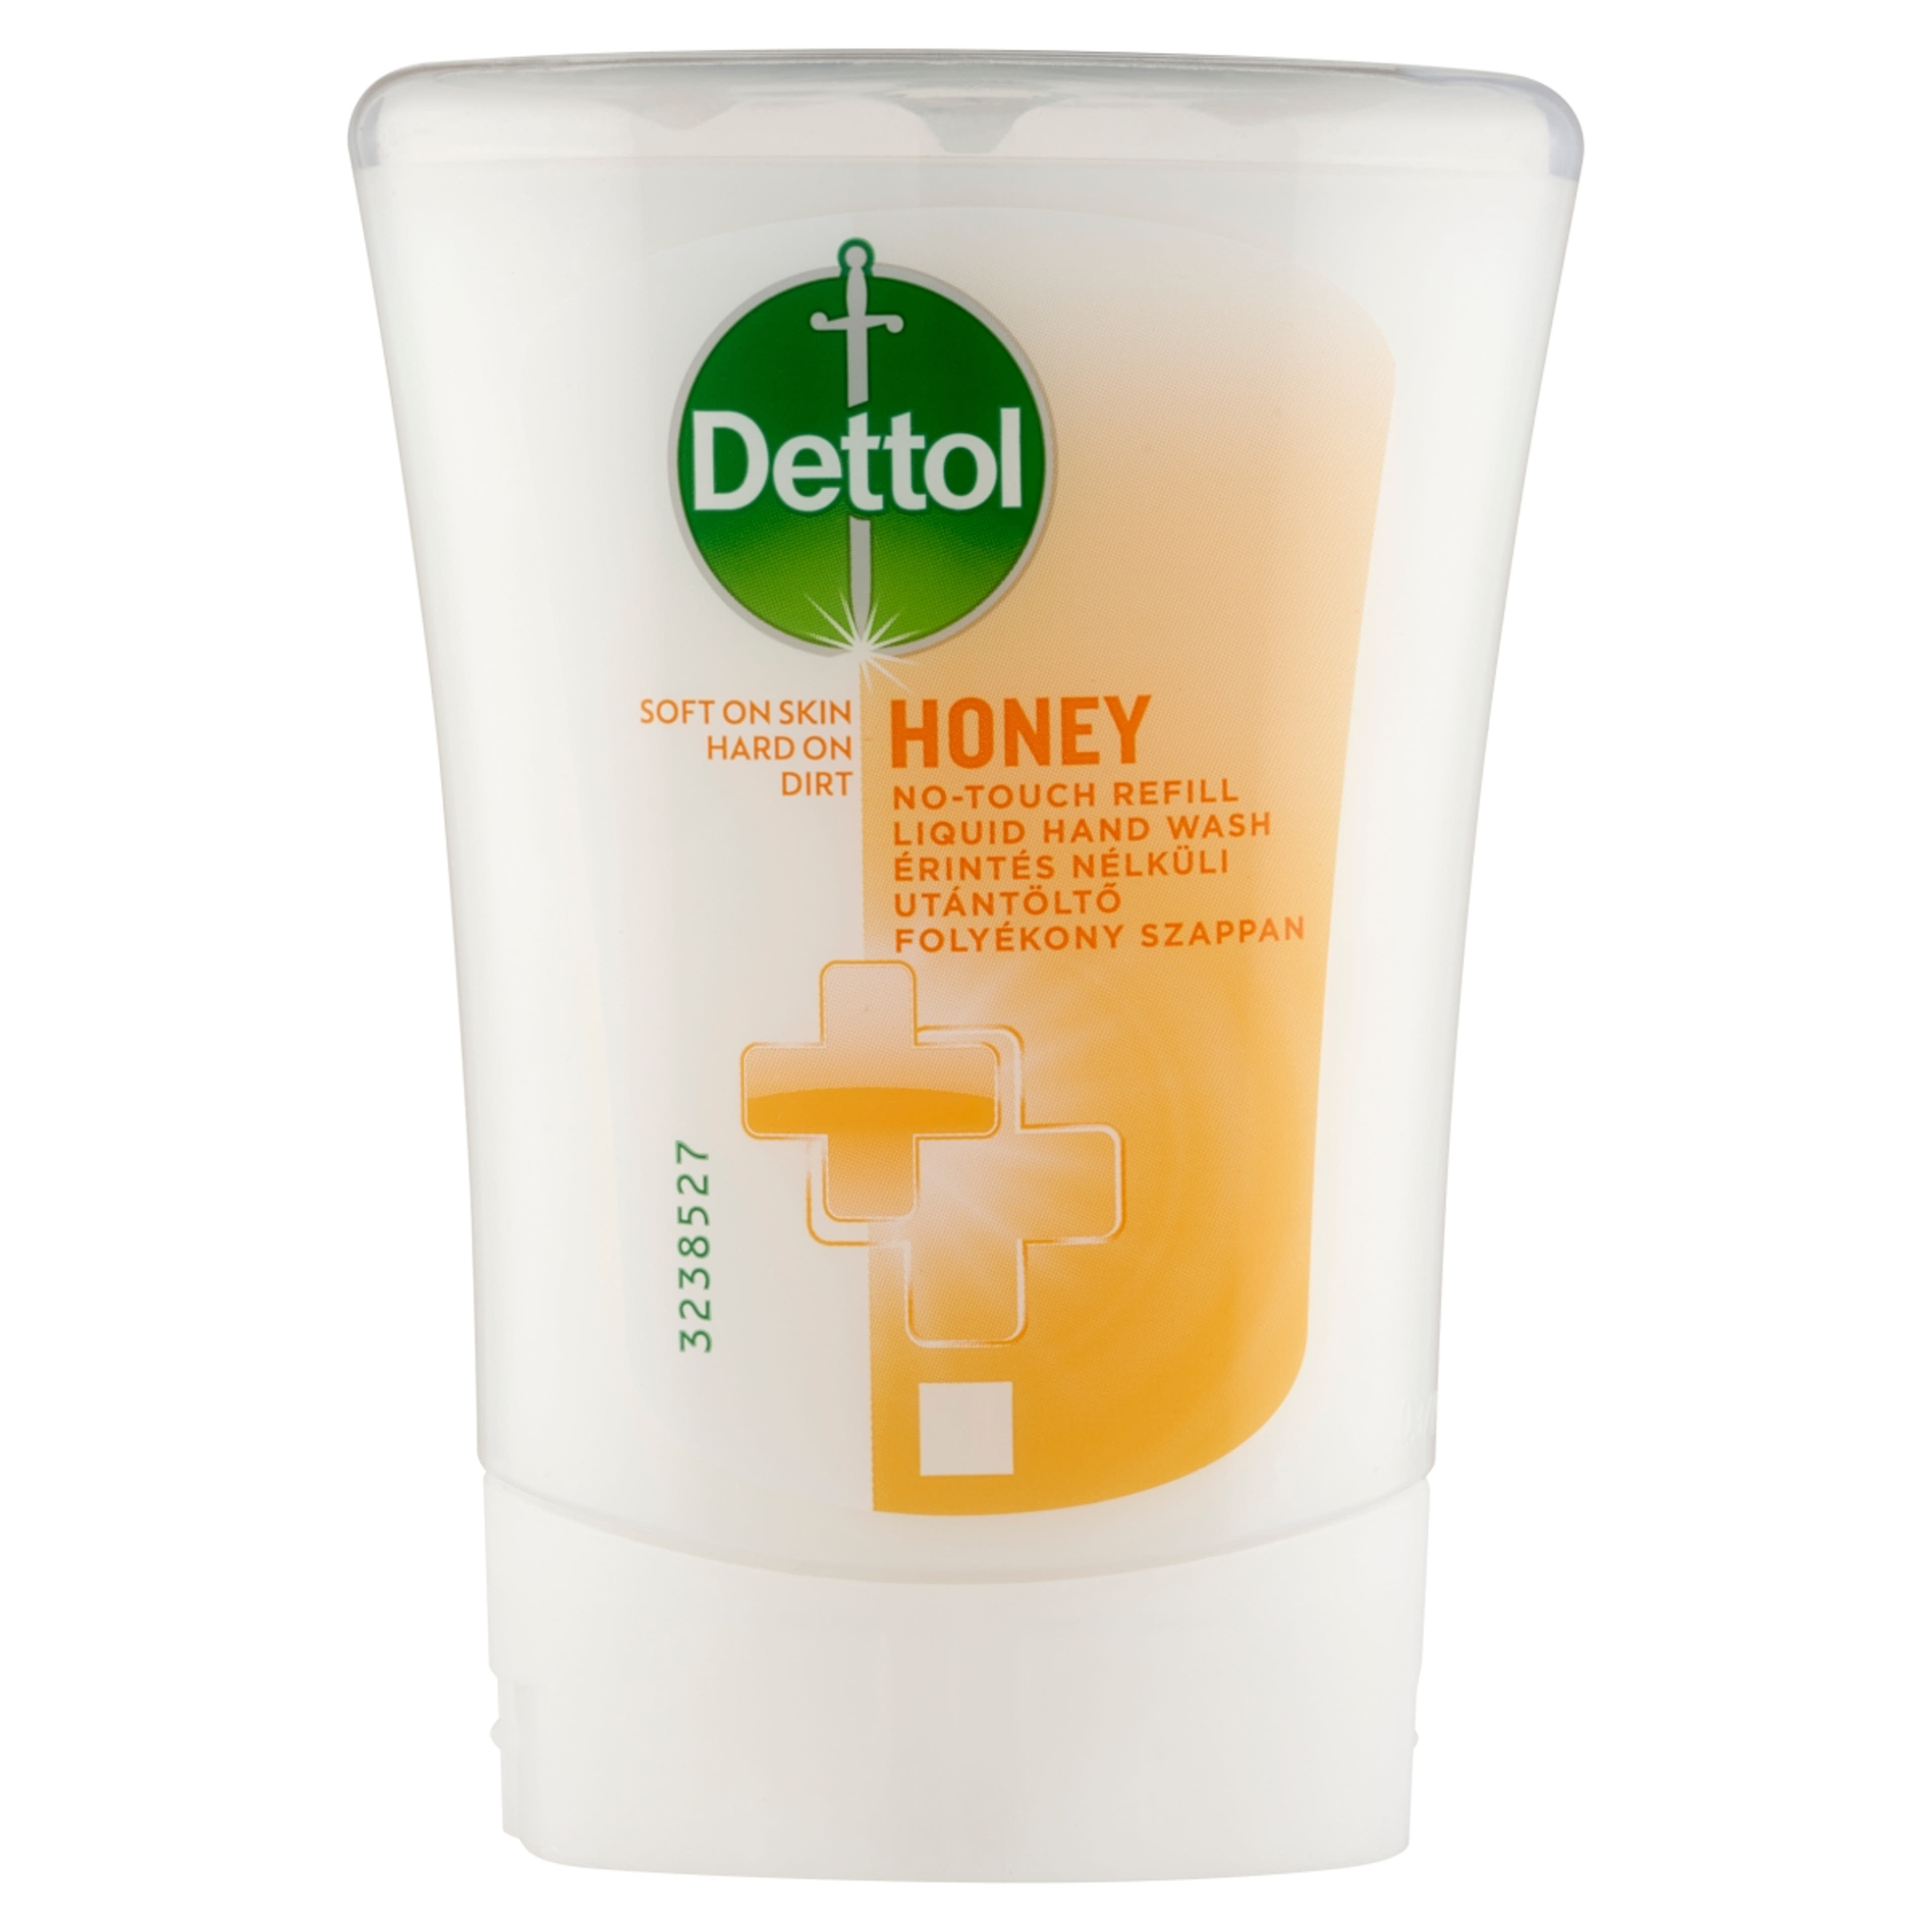 Dettol méz illatú utántöltő érintés nélküli kézmosó készülékhez - 250 ml